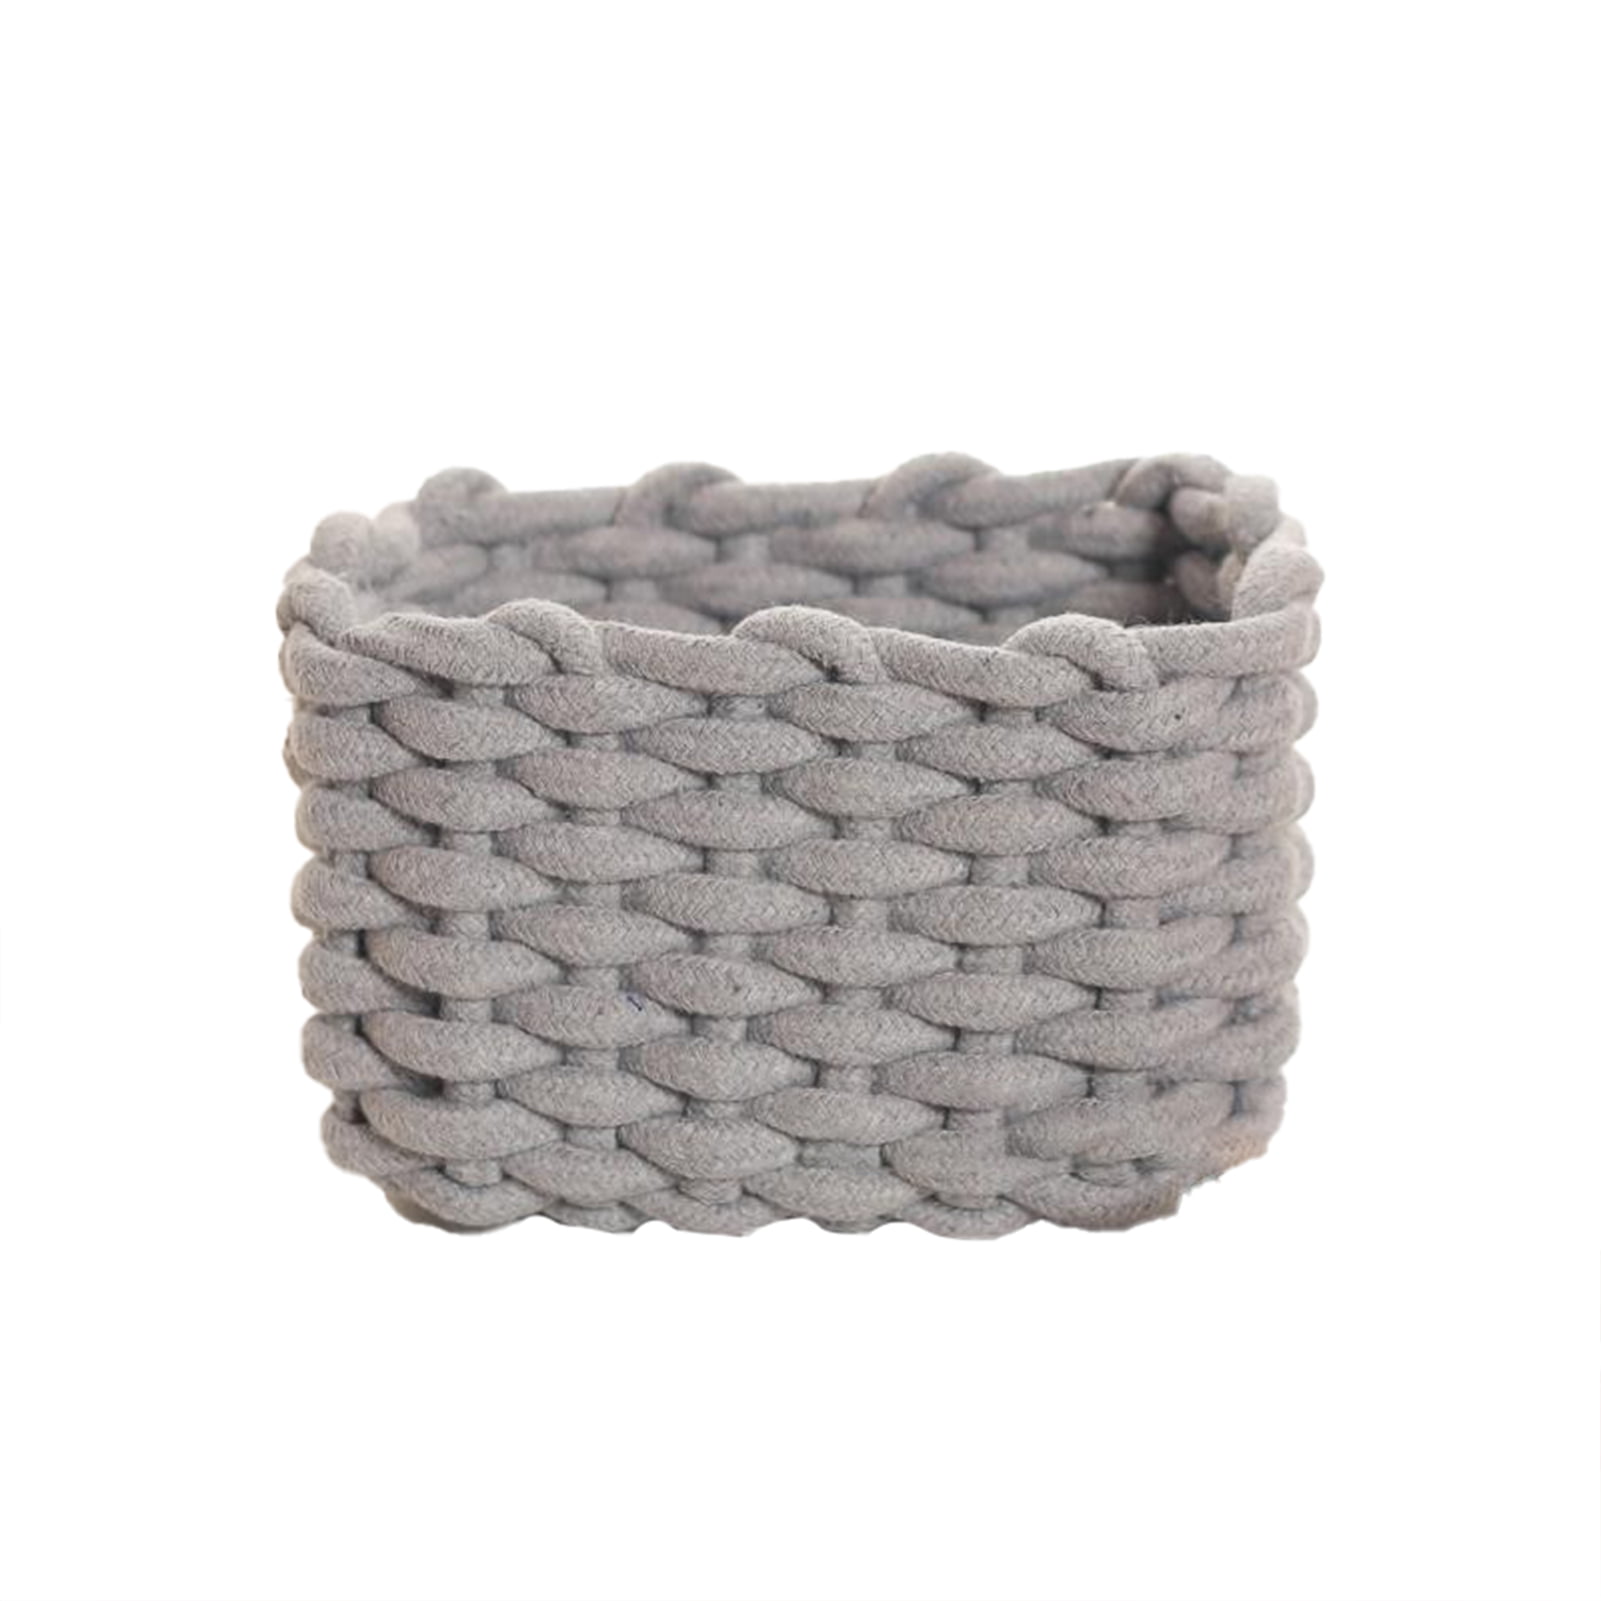 HOSROOME Cestas pequeñas de papel higiénico tejidas con cuerda de algodón  para organizar cestas decorativas para almacenamiento de decoración  bohemia